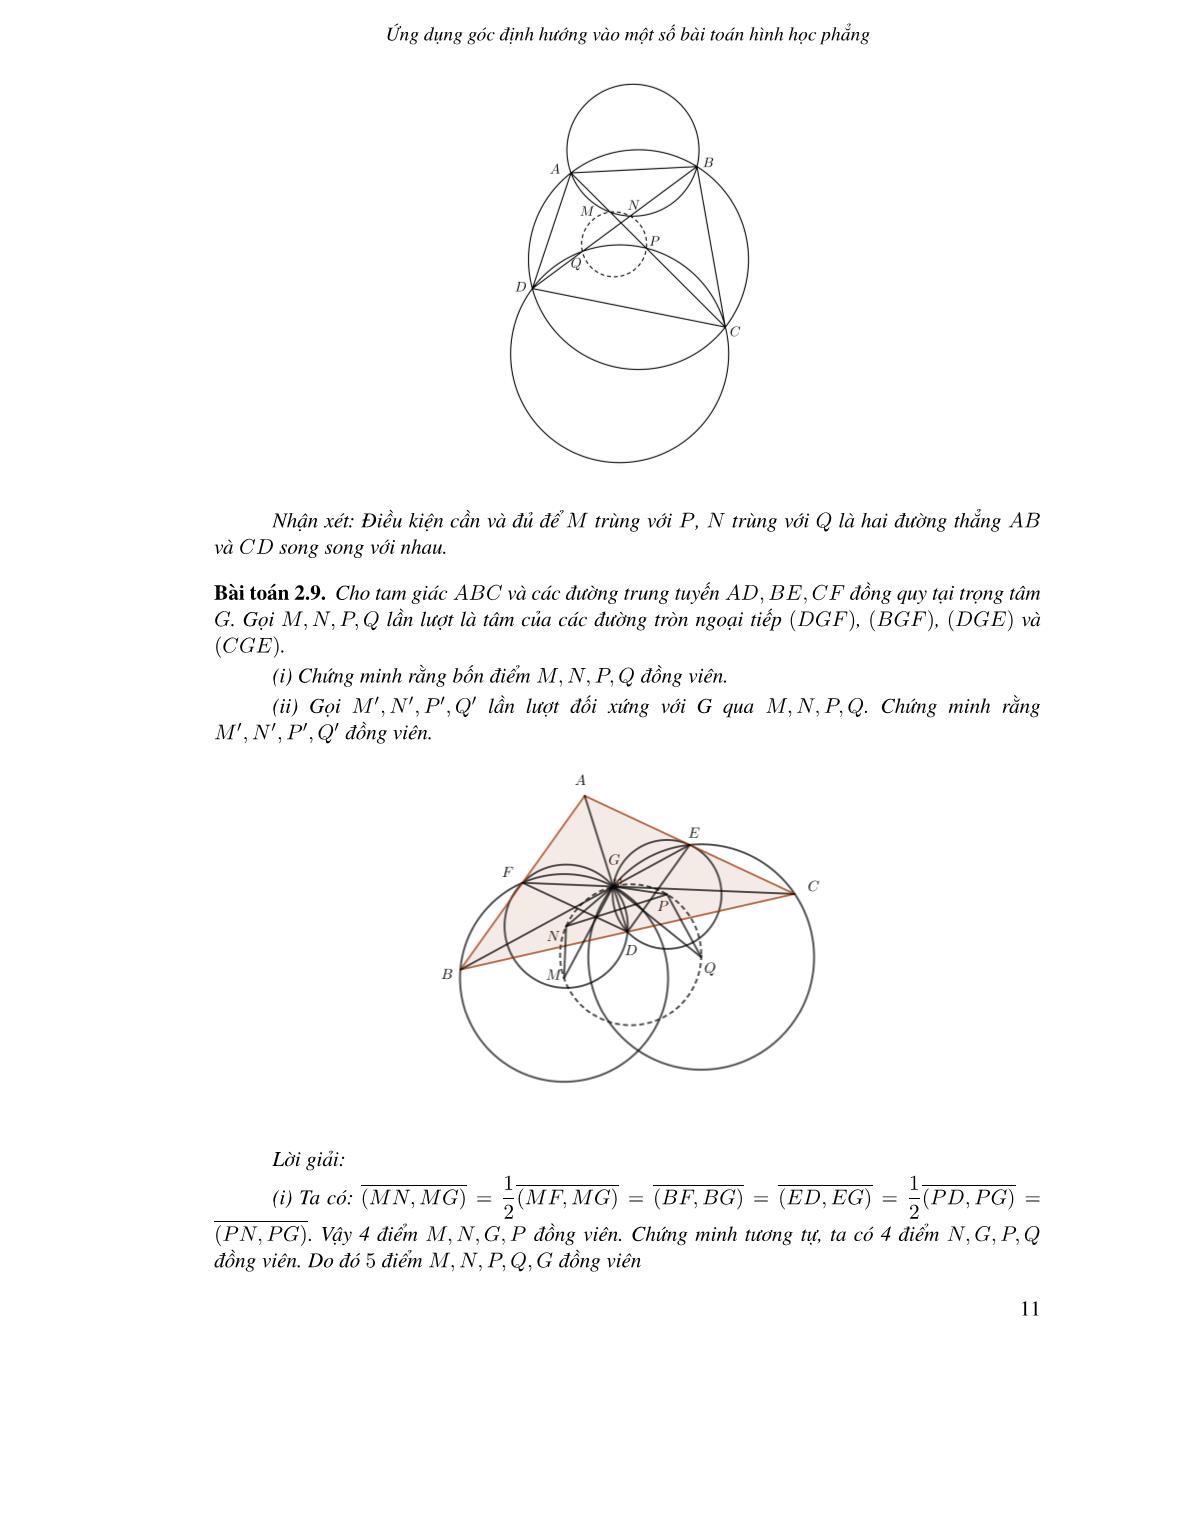 Ứng dụng góc định hướng vào một số bài toán hình học phẳng trang 9